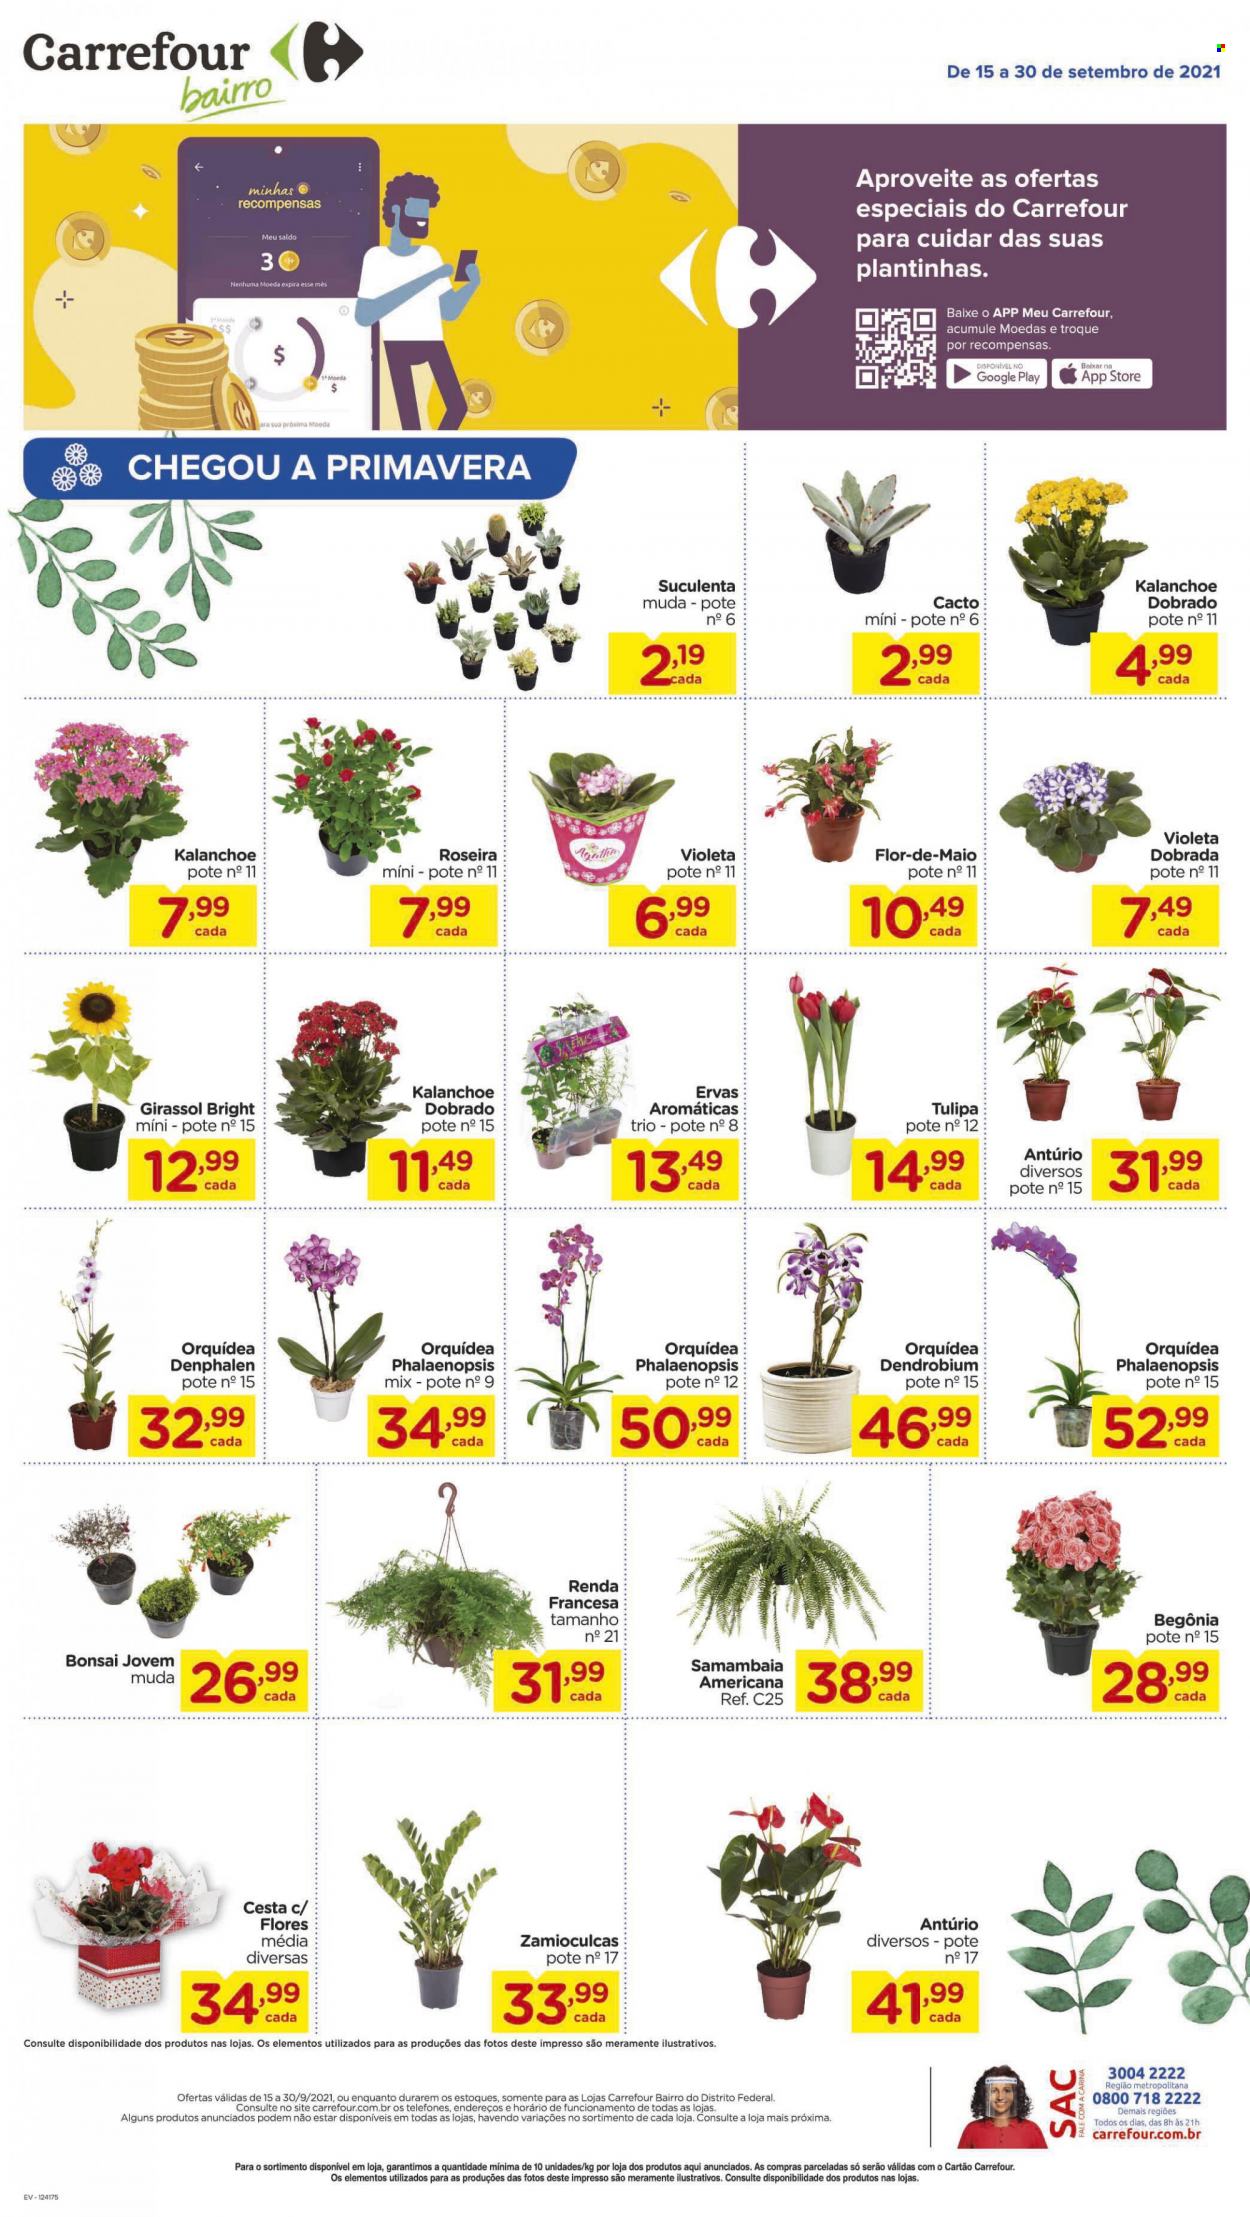 thumbnail - Folheto Carrefour Bairro - 15/09/2021 - 30/09/2021 - Produtos em promoção - ervas aromáticas, cesta, orquídea, plantas verdes. Página 1.